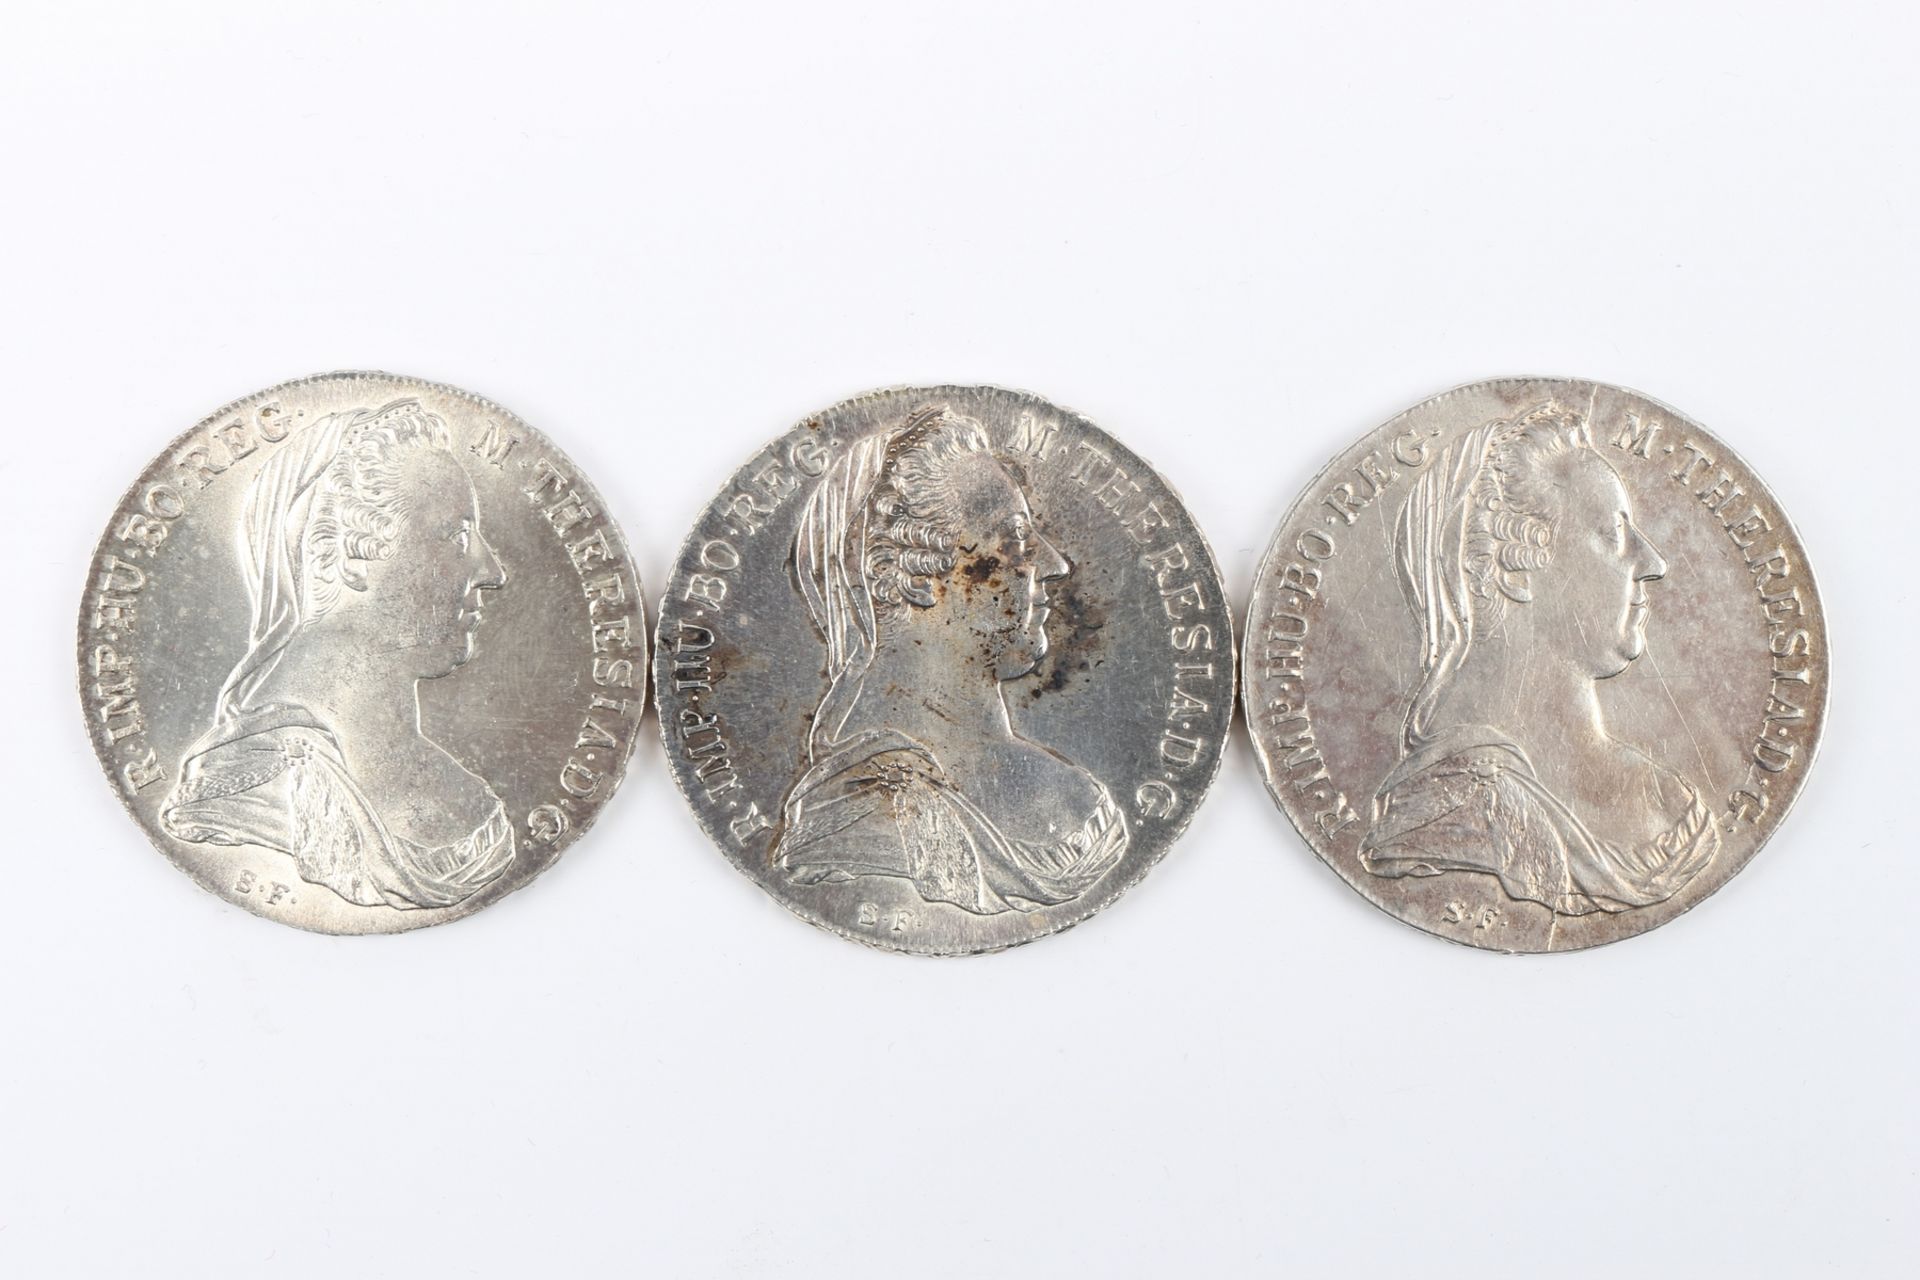 3 Maria Theresien Taler Silbermünze 1780 Österreich, silver coins,